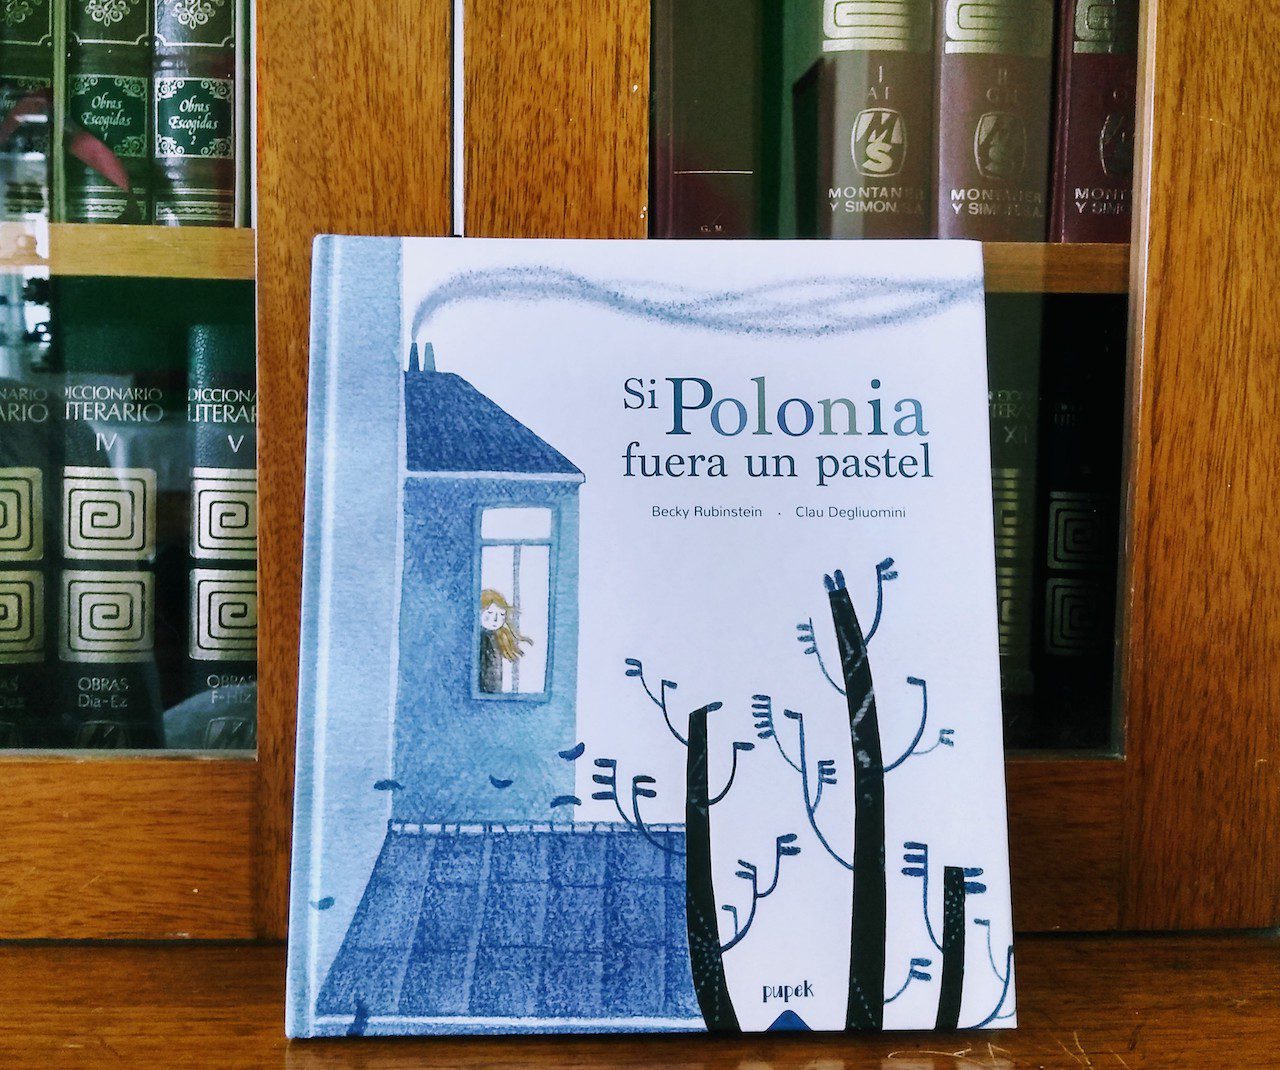 "Si Polonia fuera un pastel", de Pupek Libros, es un bello libro sobre cómo sobrevivir a la adversidad y crecer y aprender